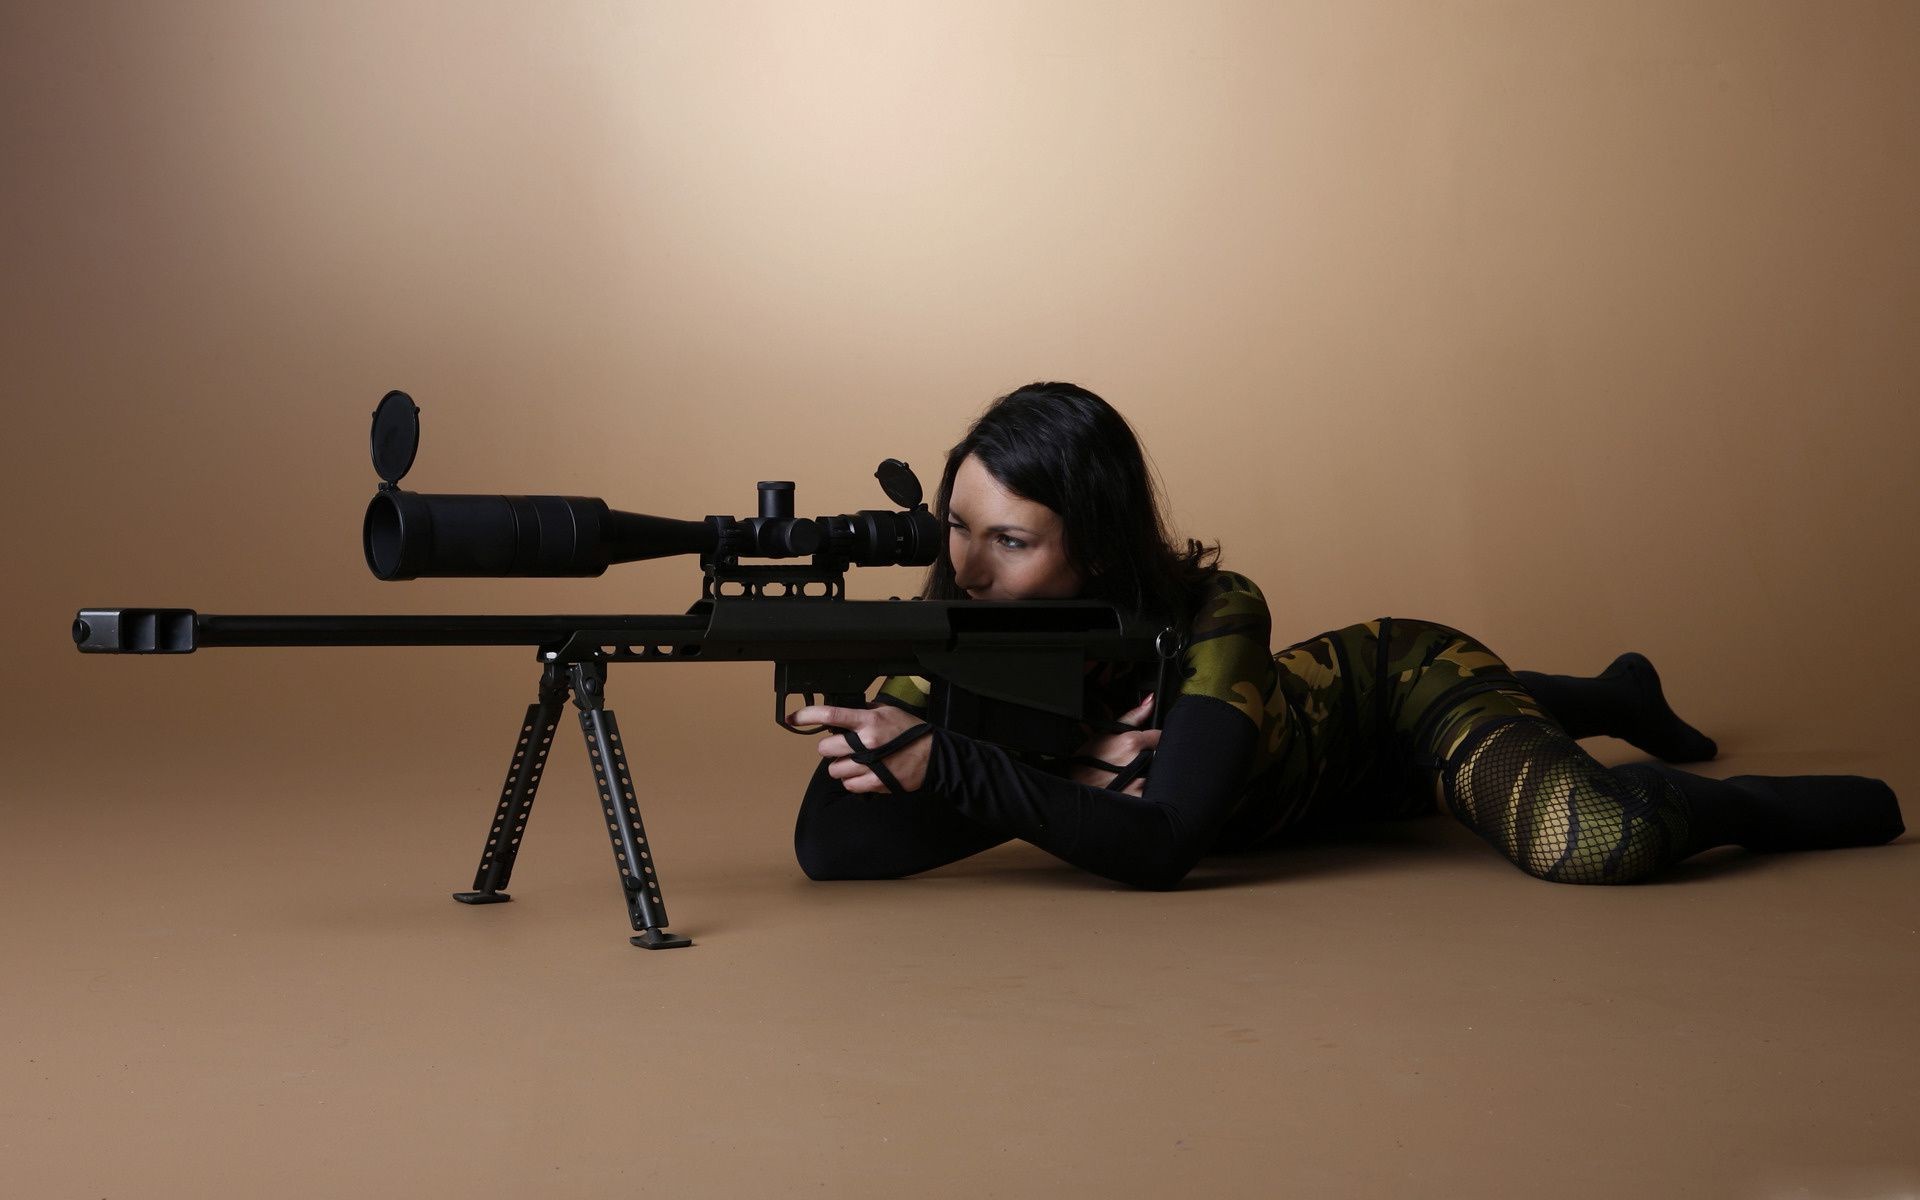 оружие и армия пистолет оружие взрослый военные войны винтовка битва преступление армия один девушка силу пистолет портрет солдат